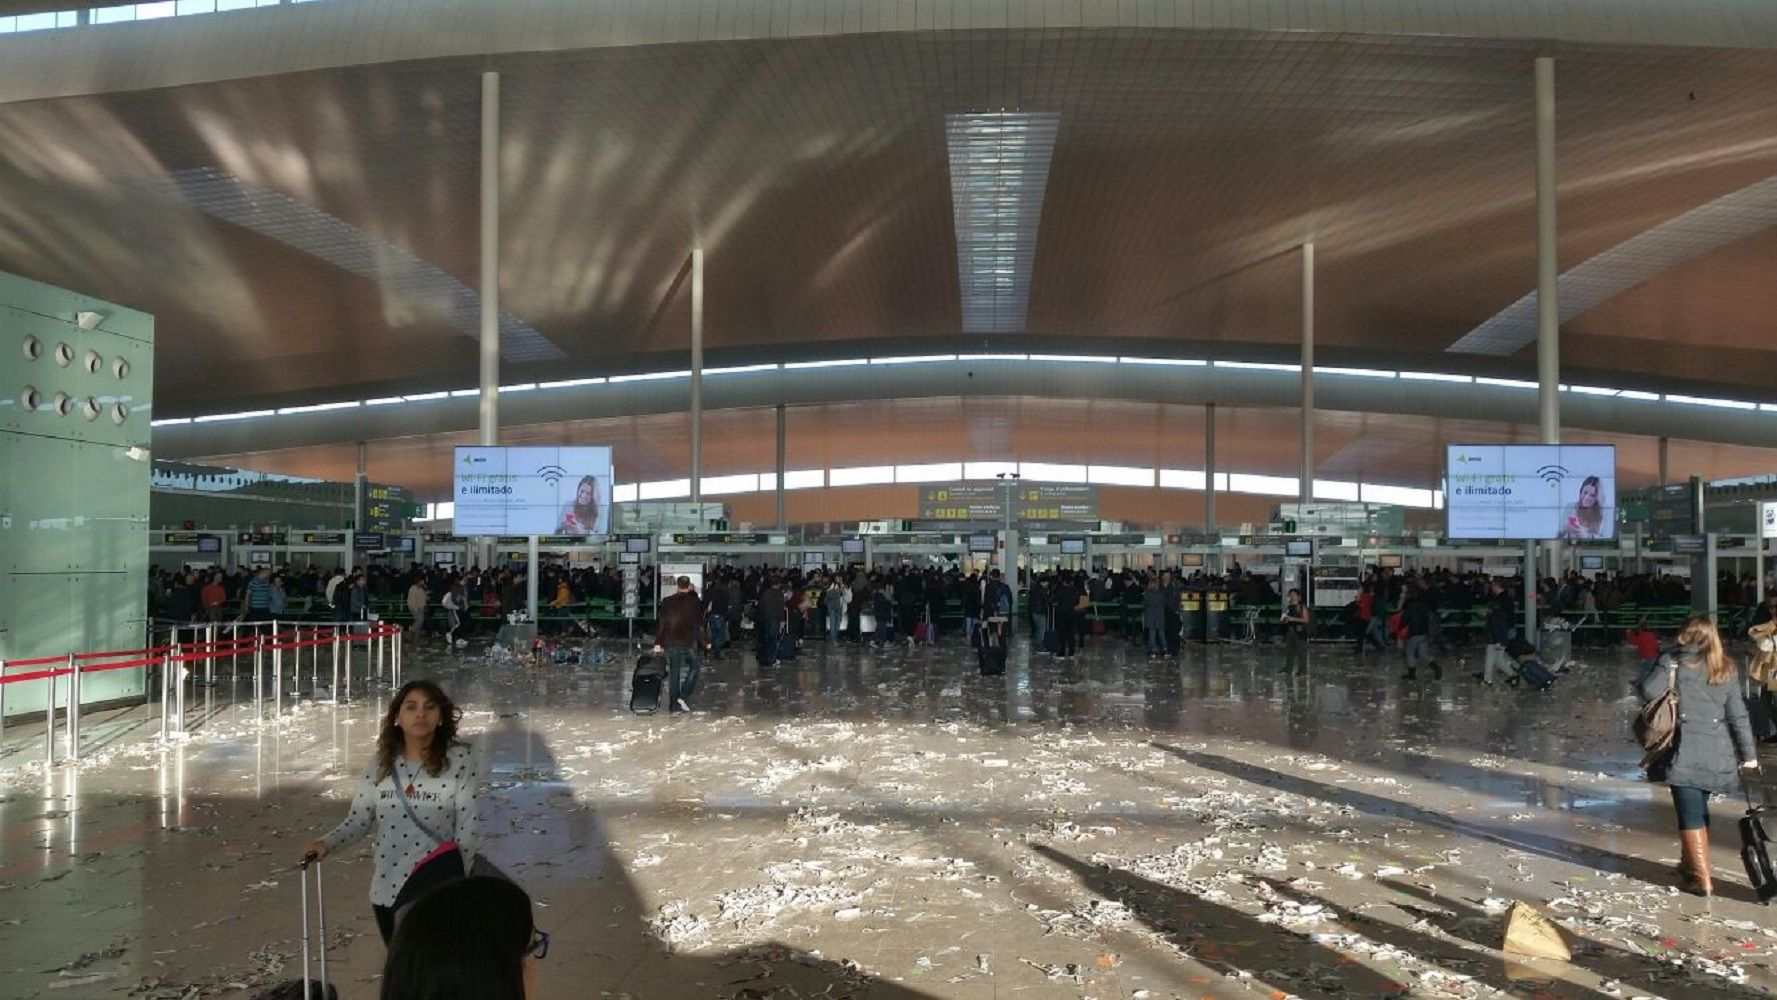 Galeria: El Prat, l'aeroport més brut del món?